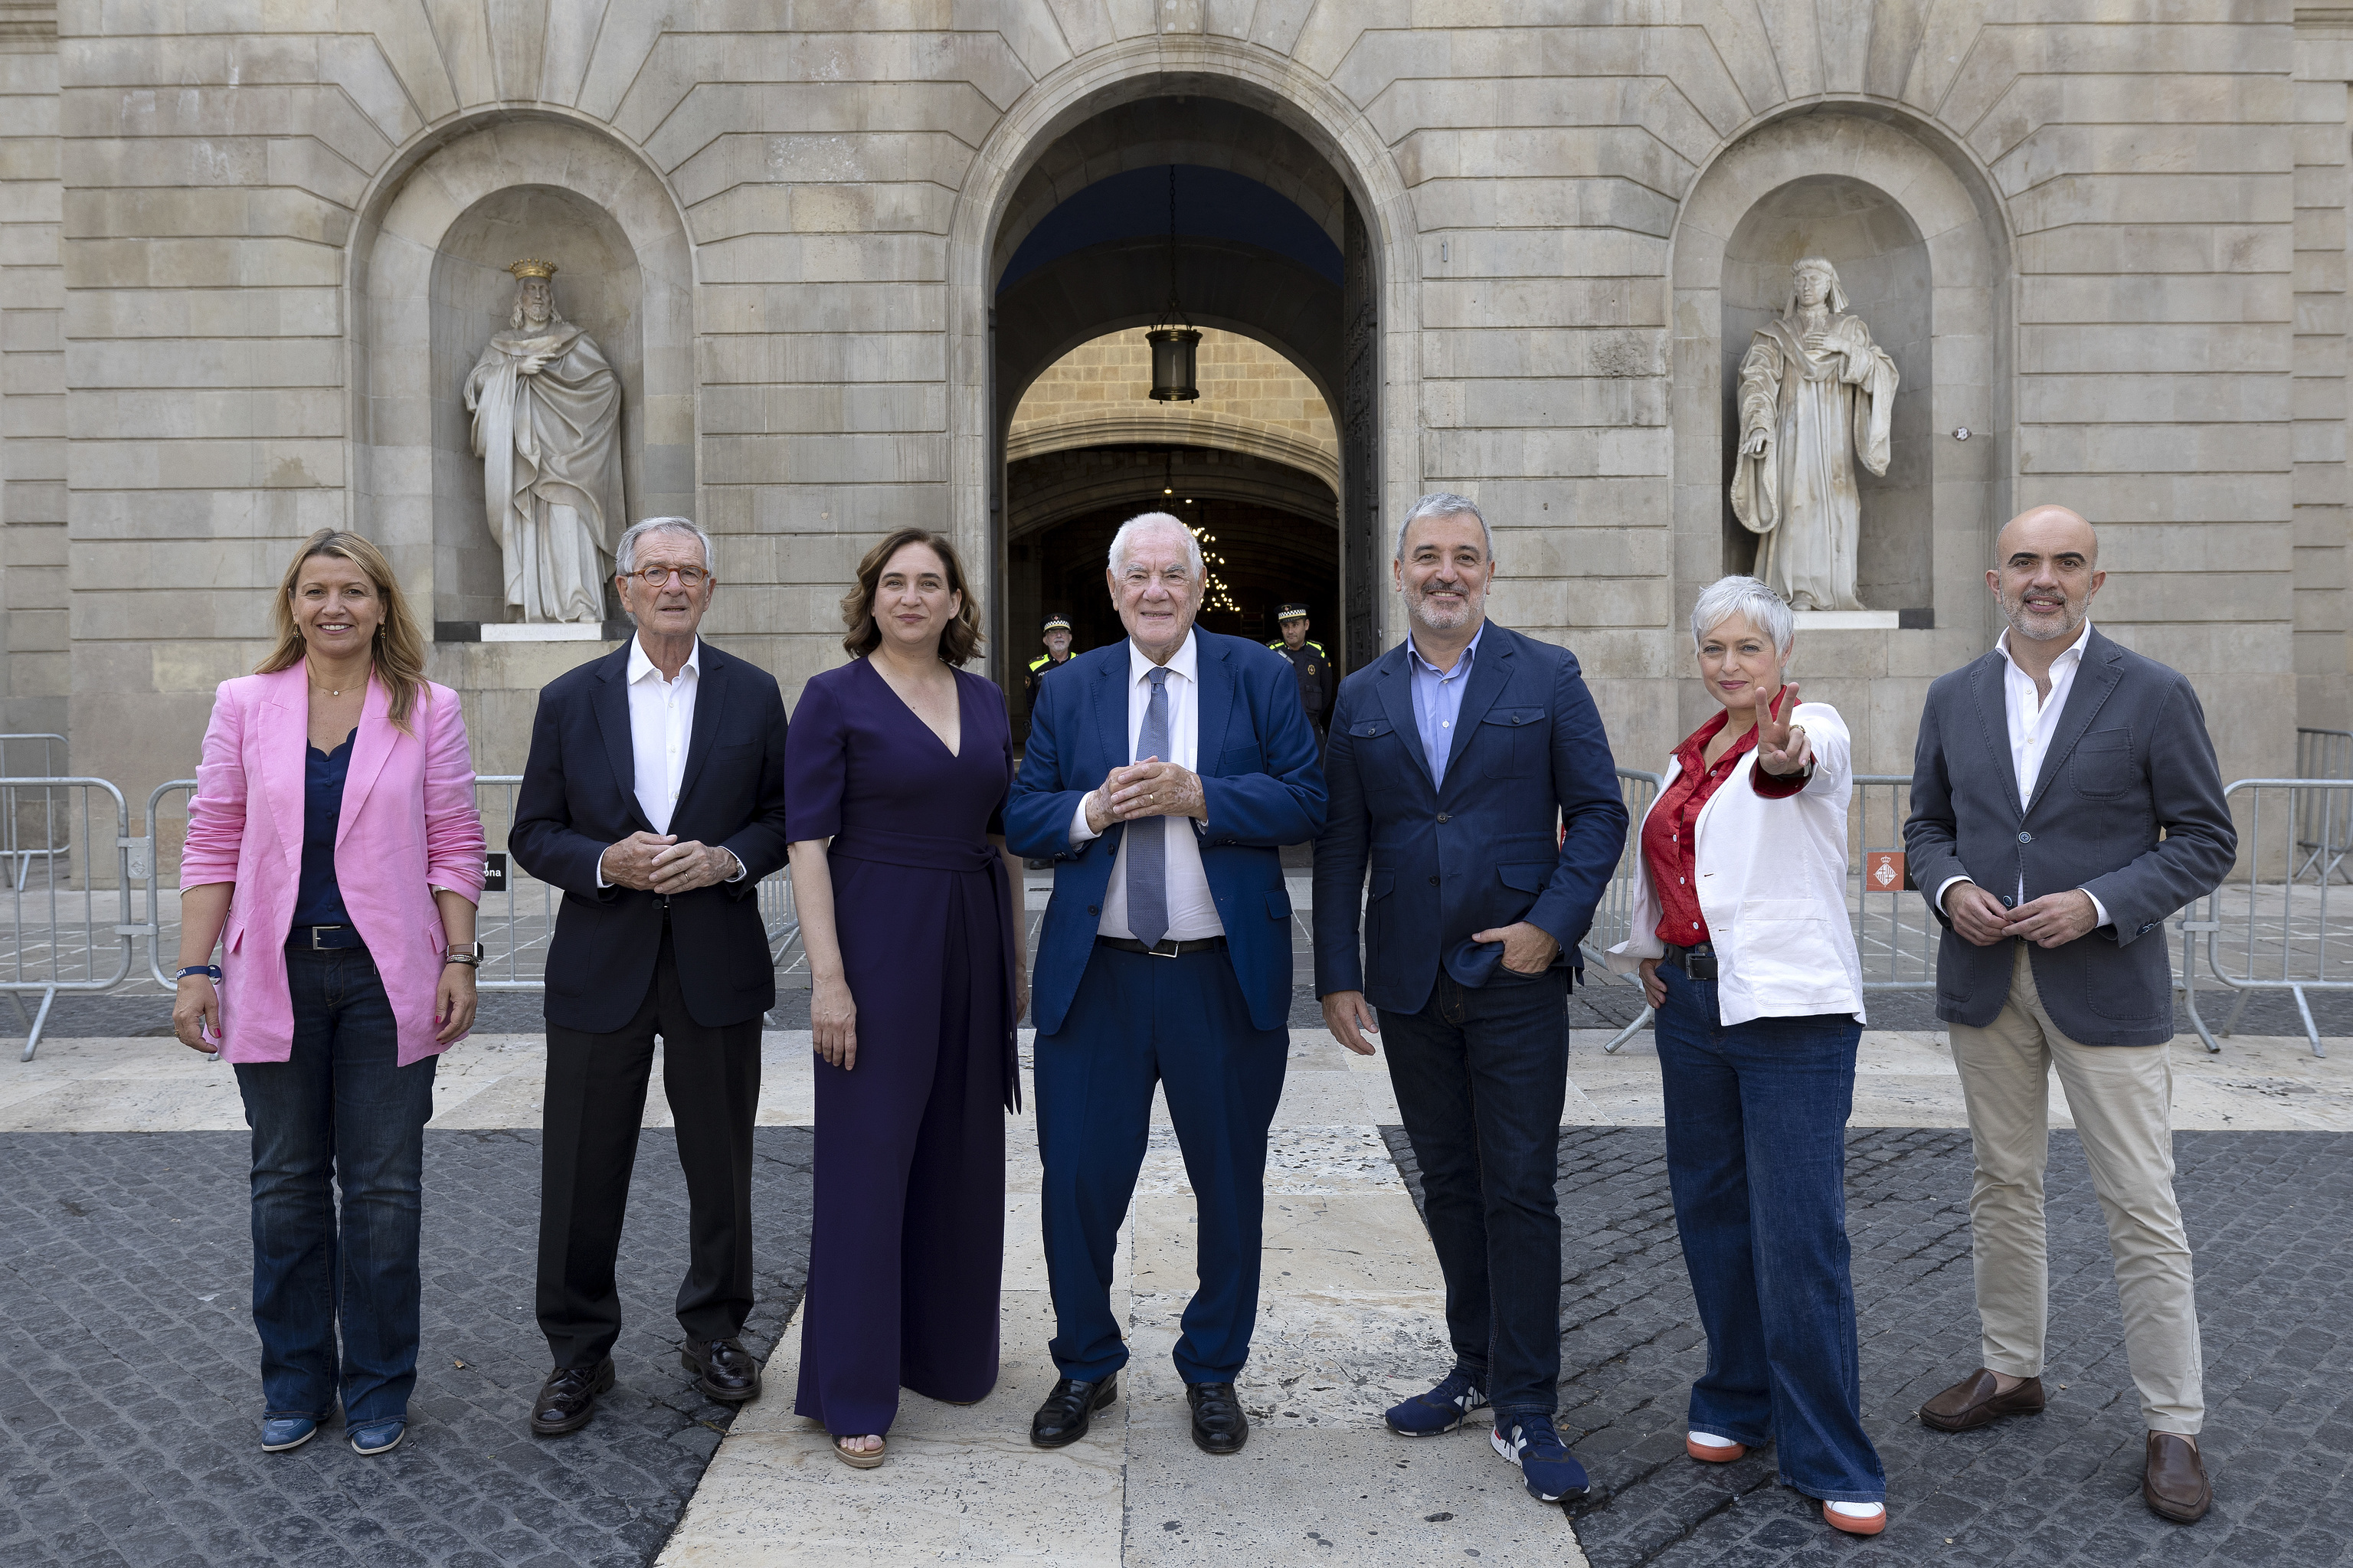 Los candidatos a la Alcaldía de Barcelona Eva Parera (Valents), Xavier Trias (JxCat), Ada Colau (En Comú), Ernest Maragall (ERC), Jaume Collboni (PSC), Anna Grau (Ciutadans) y Daniel Sirera (PPC).